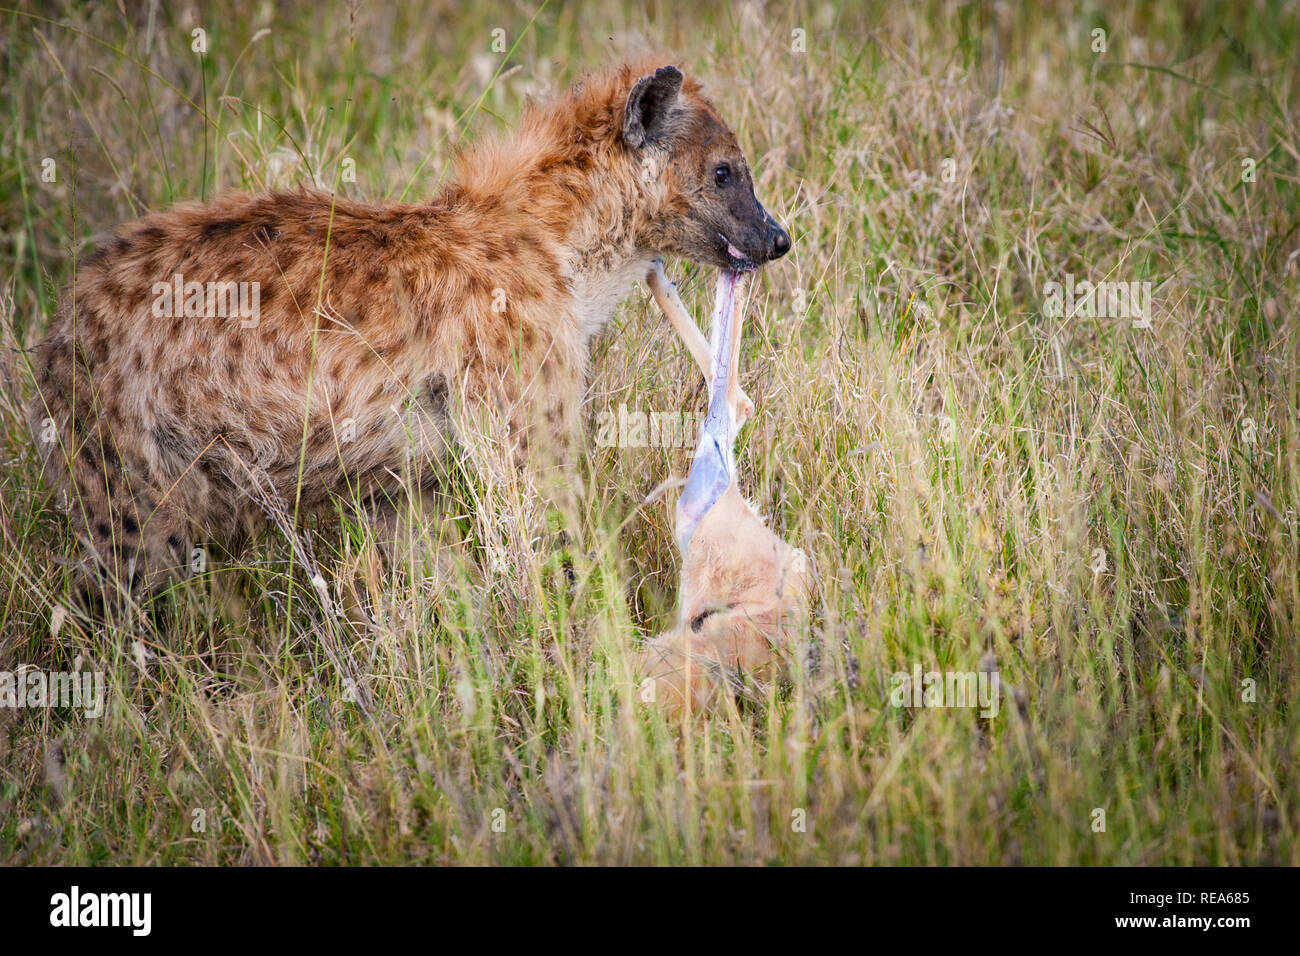 Cheetah mit Töten, Thompson Gazellen, Serengeti National Park, Tansania; Sequenz; Hyäne stiehlt der Geparden töten. Stockfoto